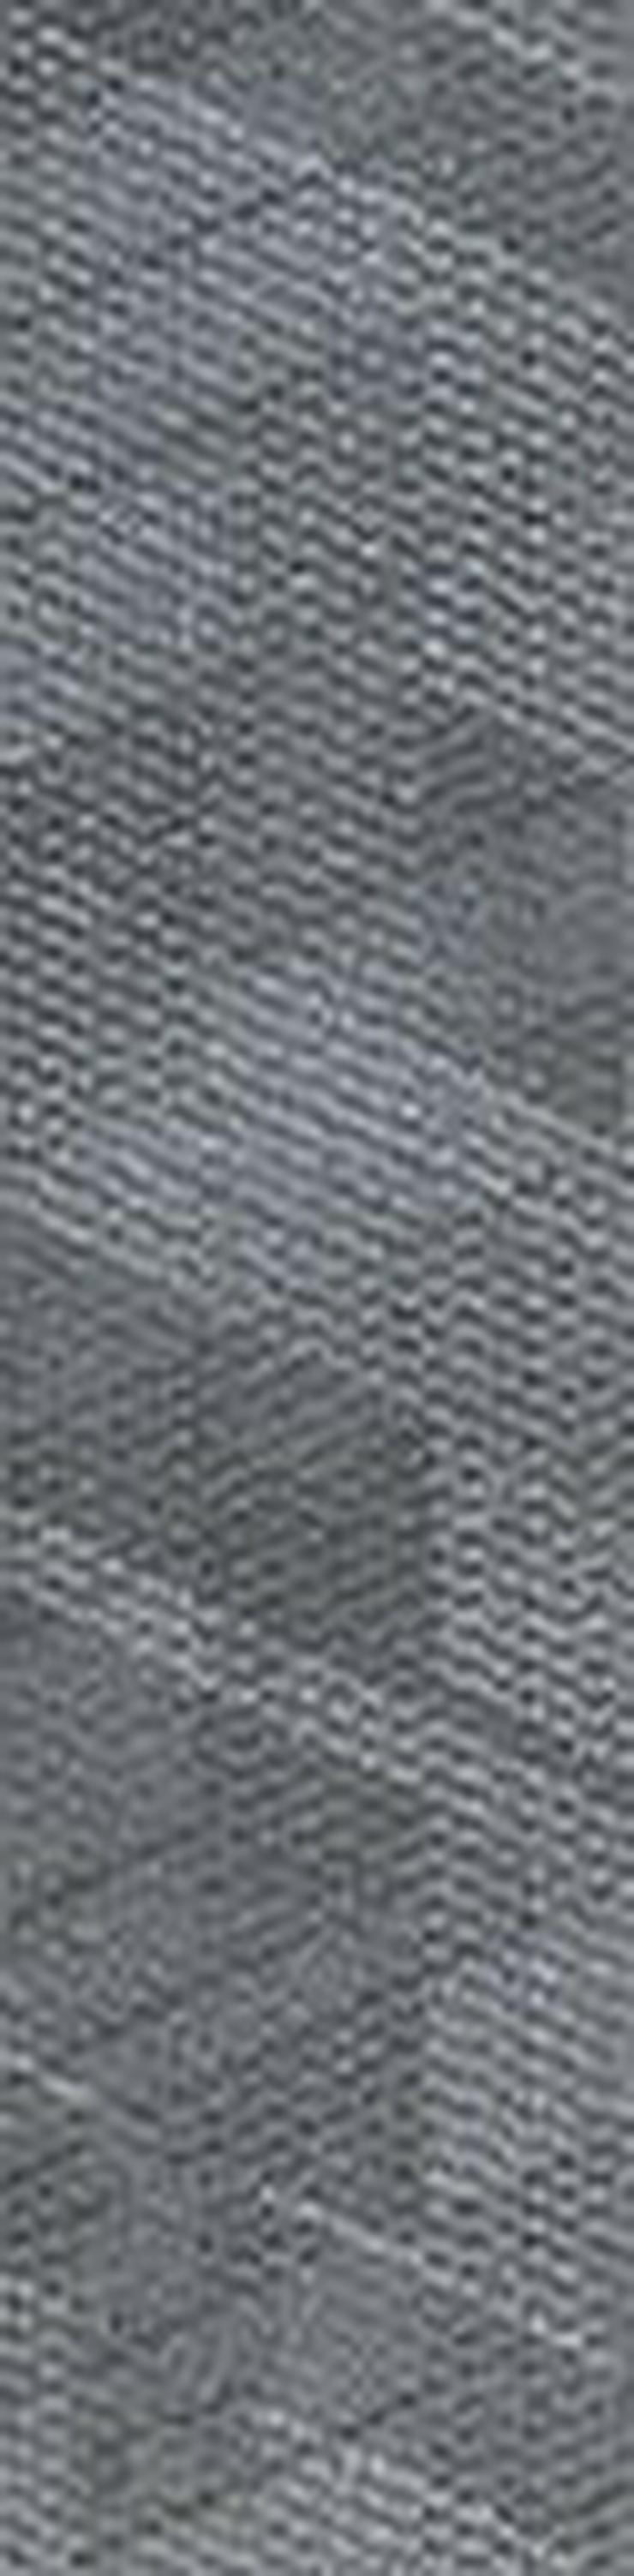 ANGEBOT Schöne 'Laminat' 25x100cm Teppichfliesen von Interface - Teppiche - Bild 4